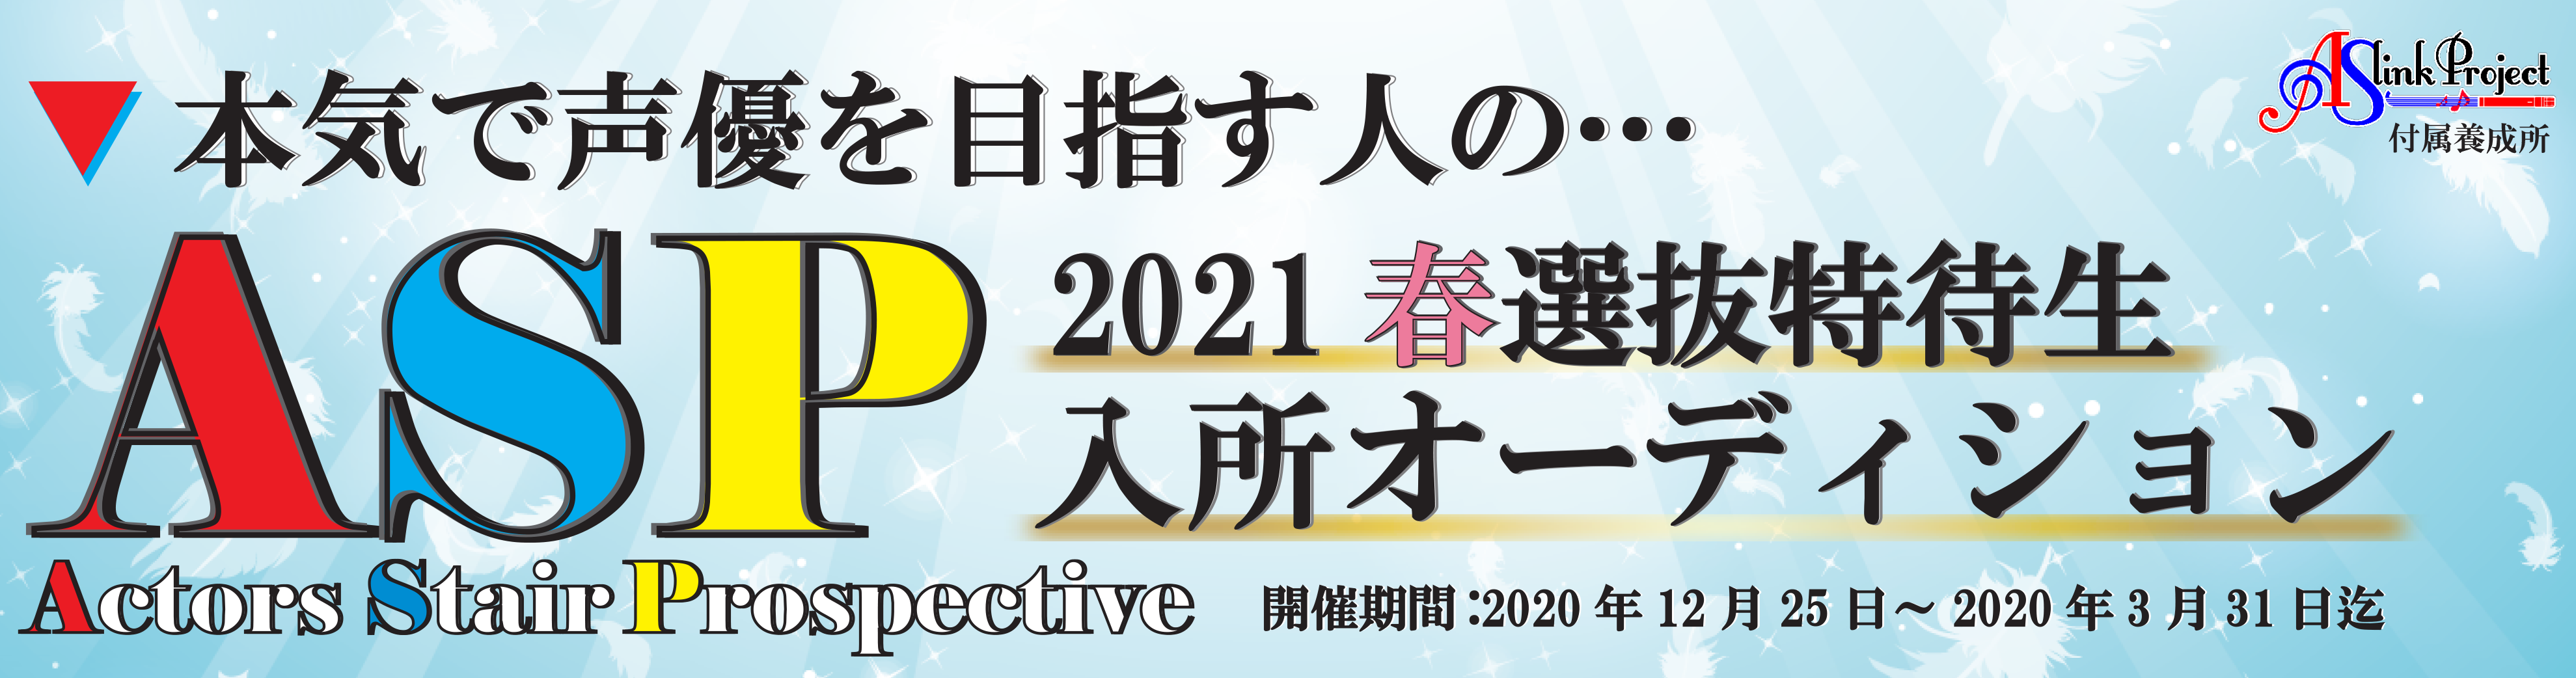 2021春HPバナー2021_asp特待3_最新